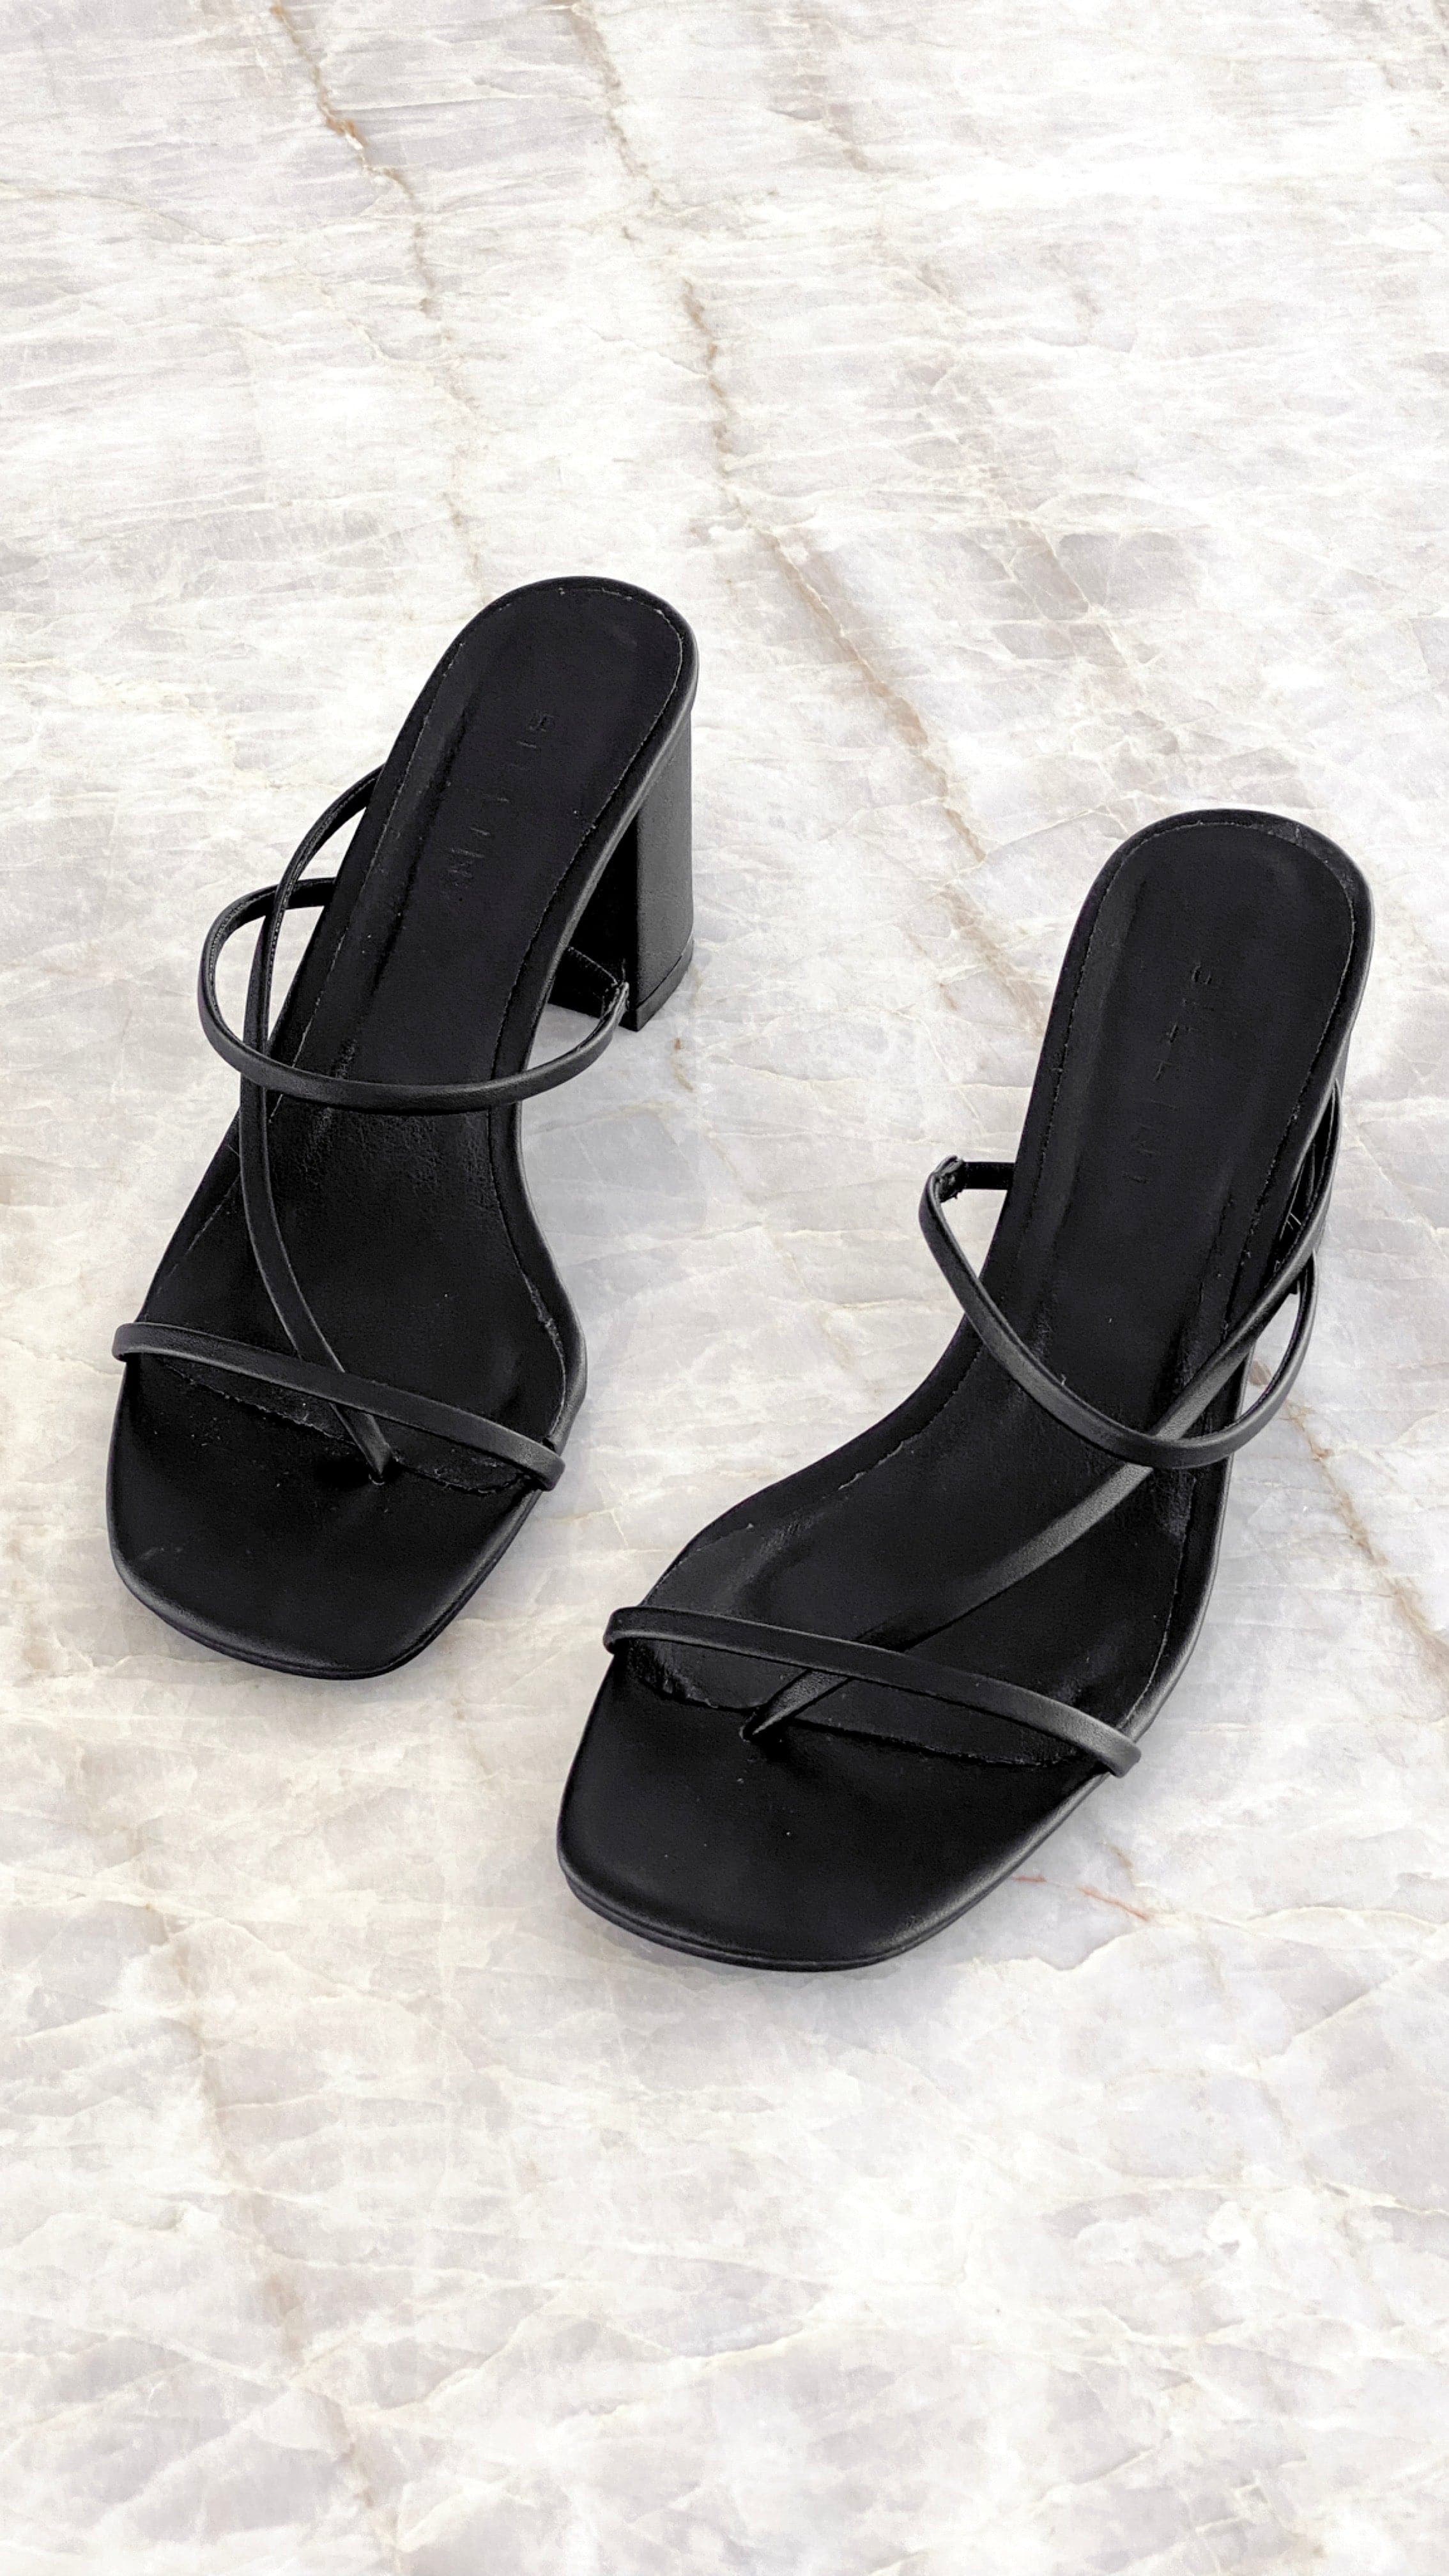 Yolani Heel - Black - Buy Women's Heels - Billy J